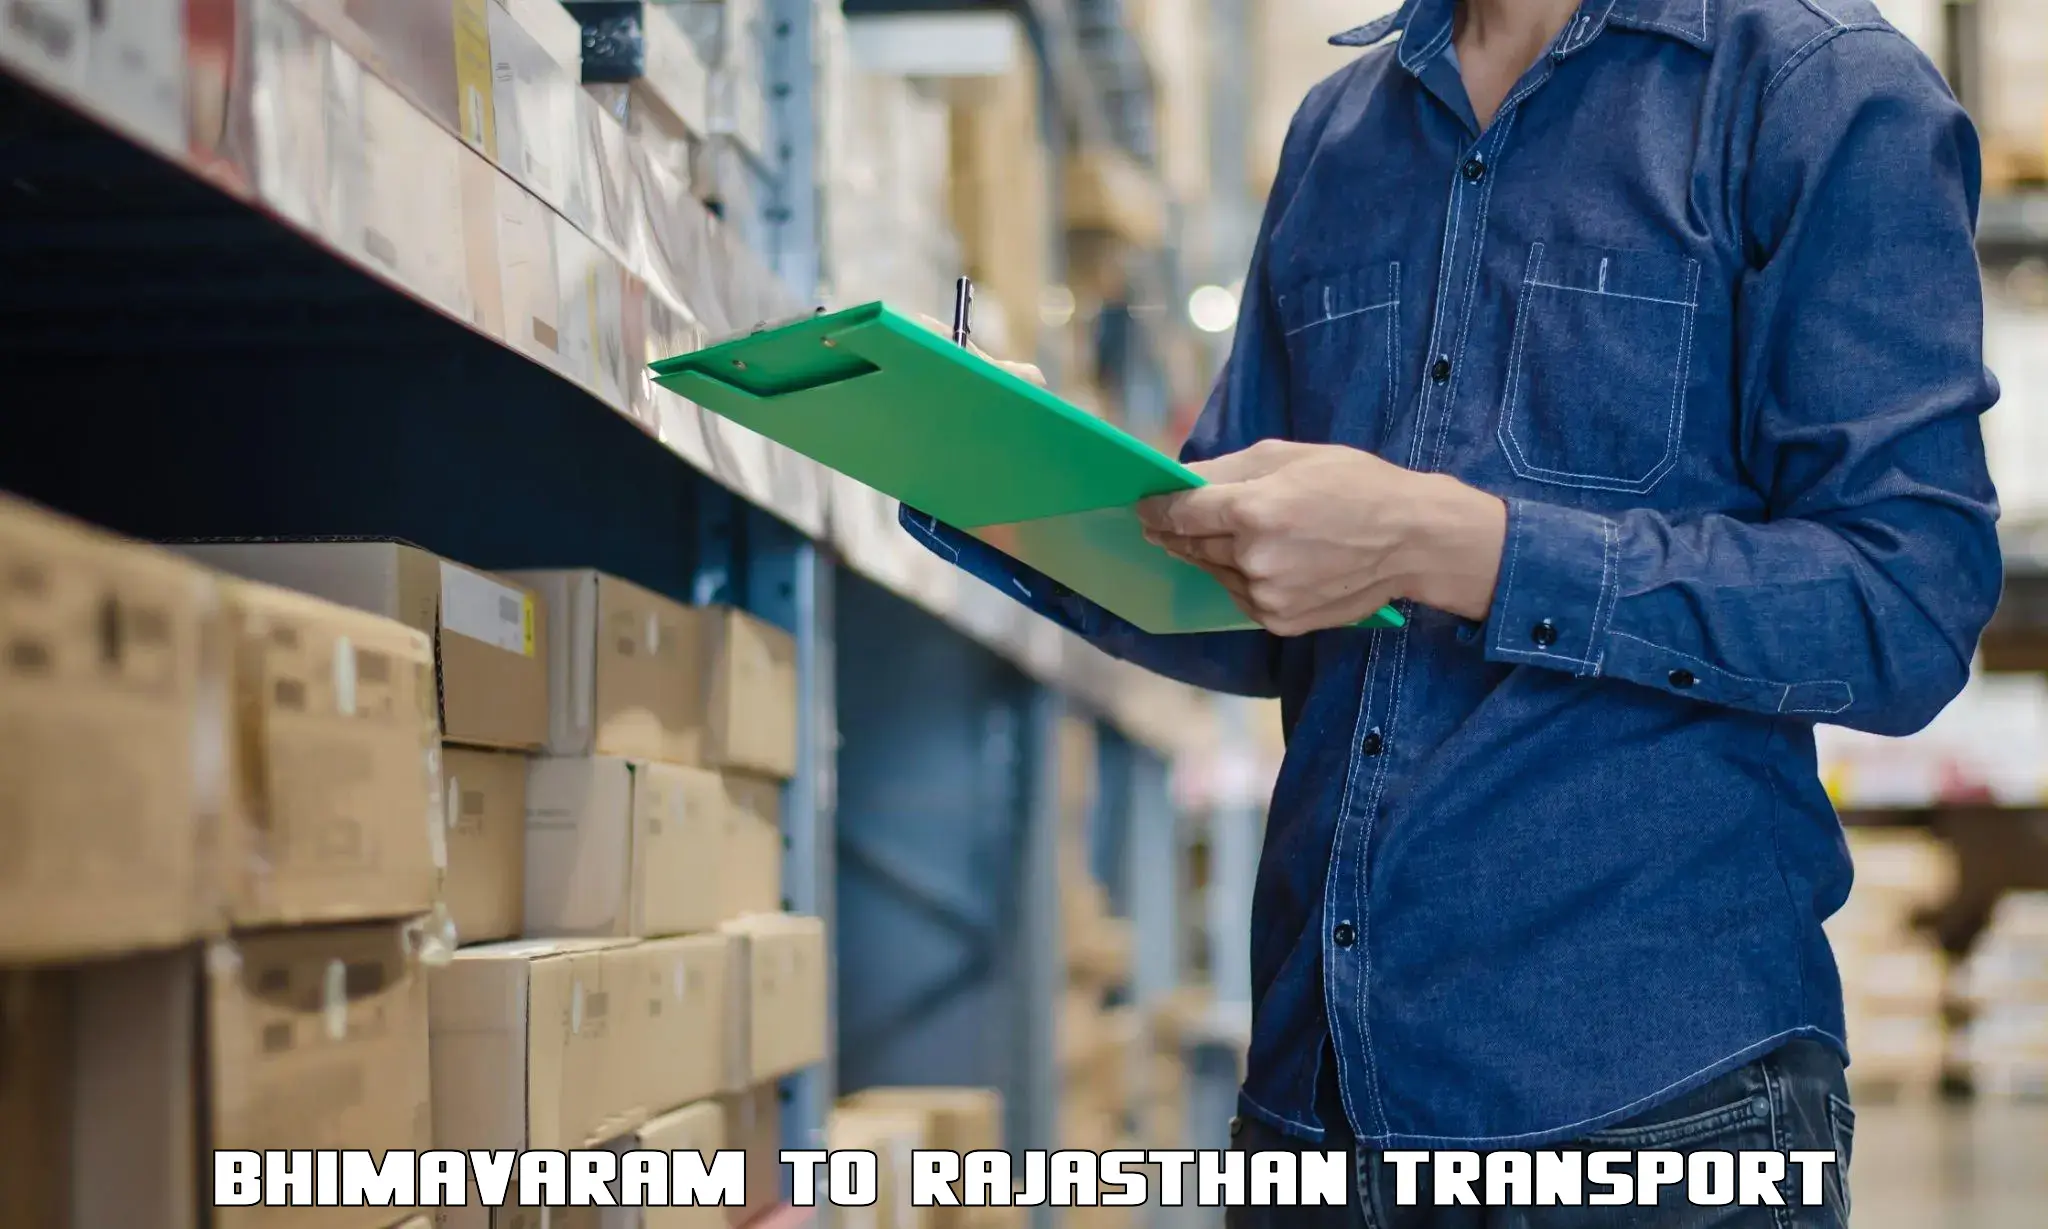 Truck transport companies in India Bhimavaram to Jalore